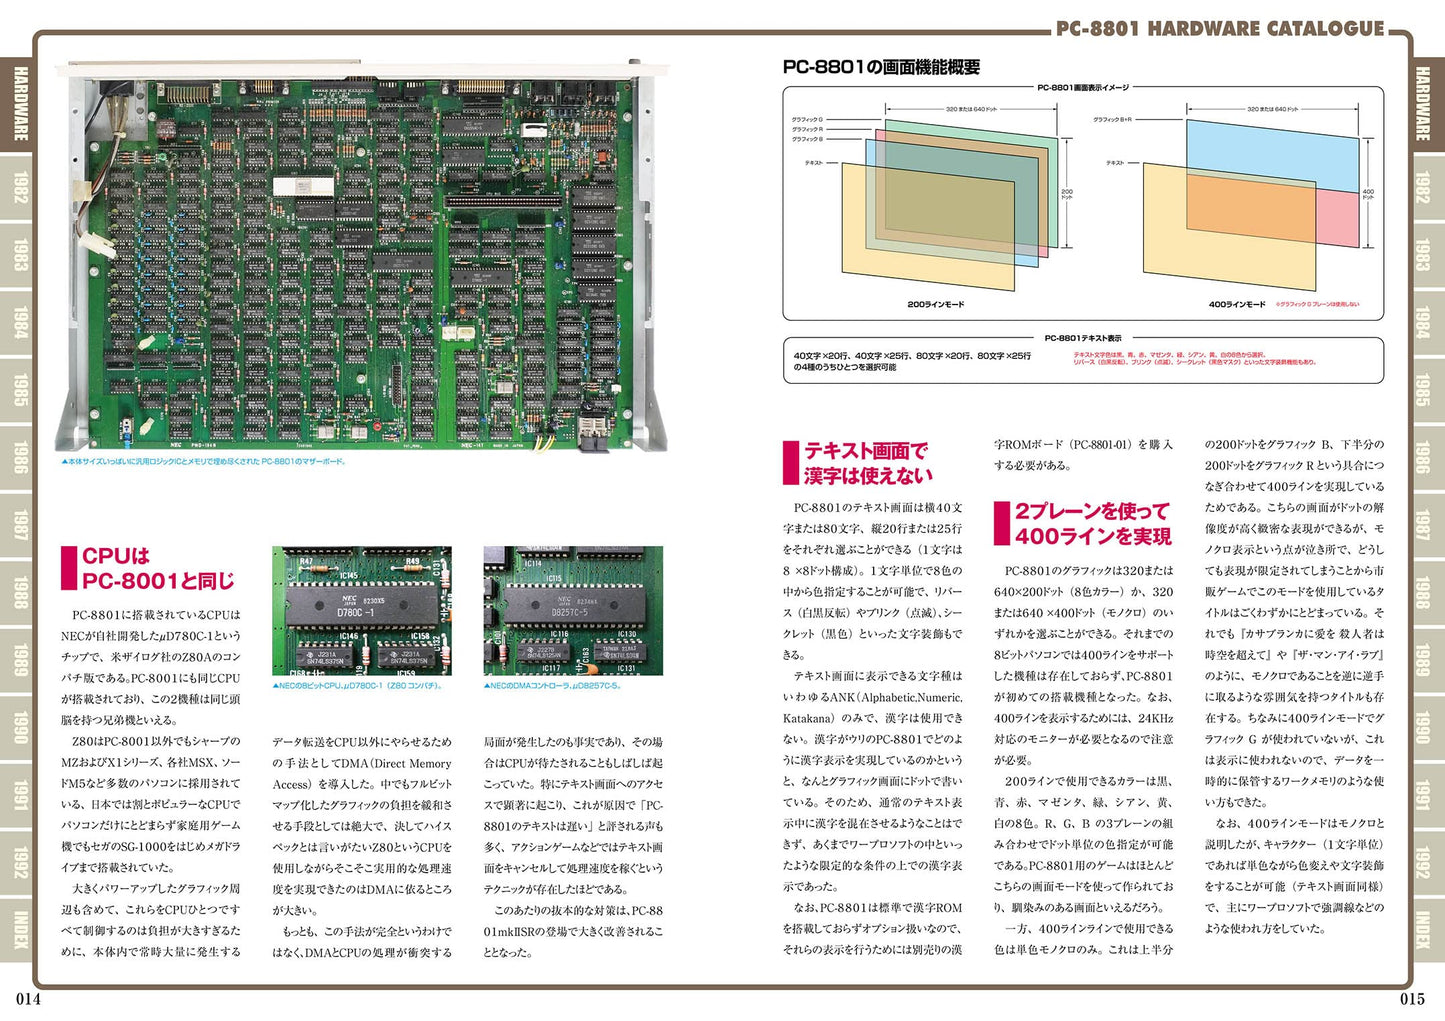 PC-8801 Perfect Catalogue